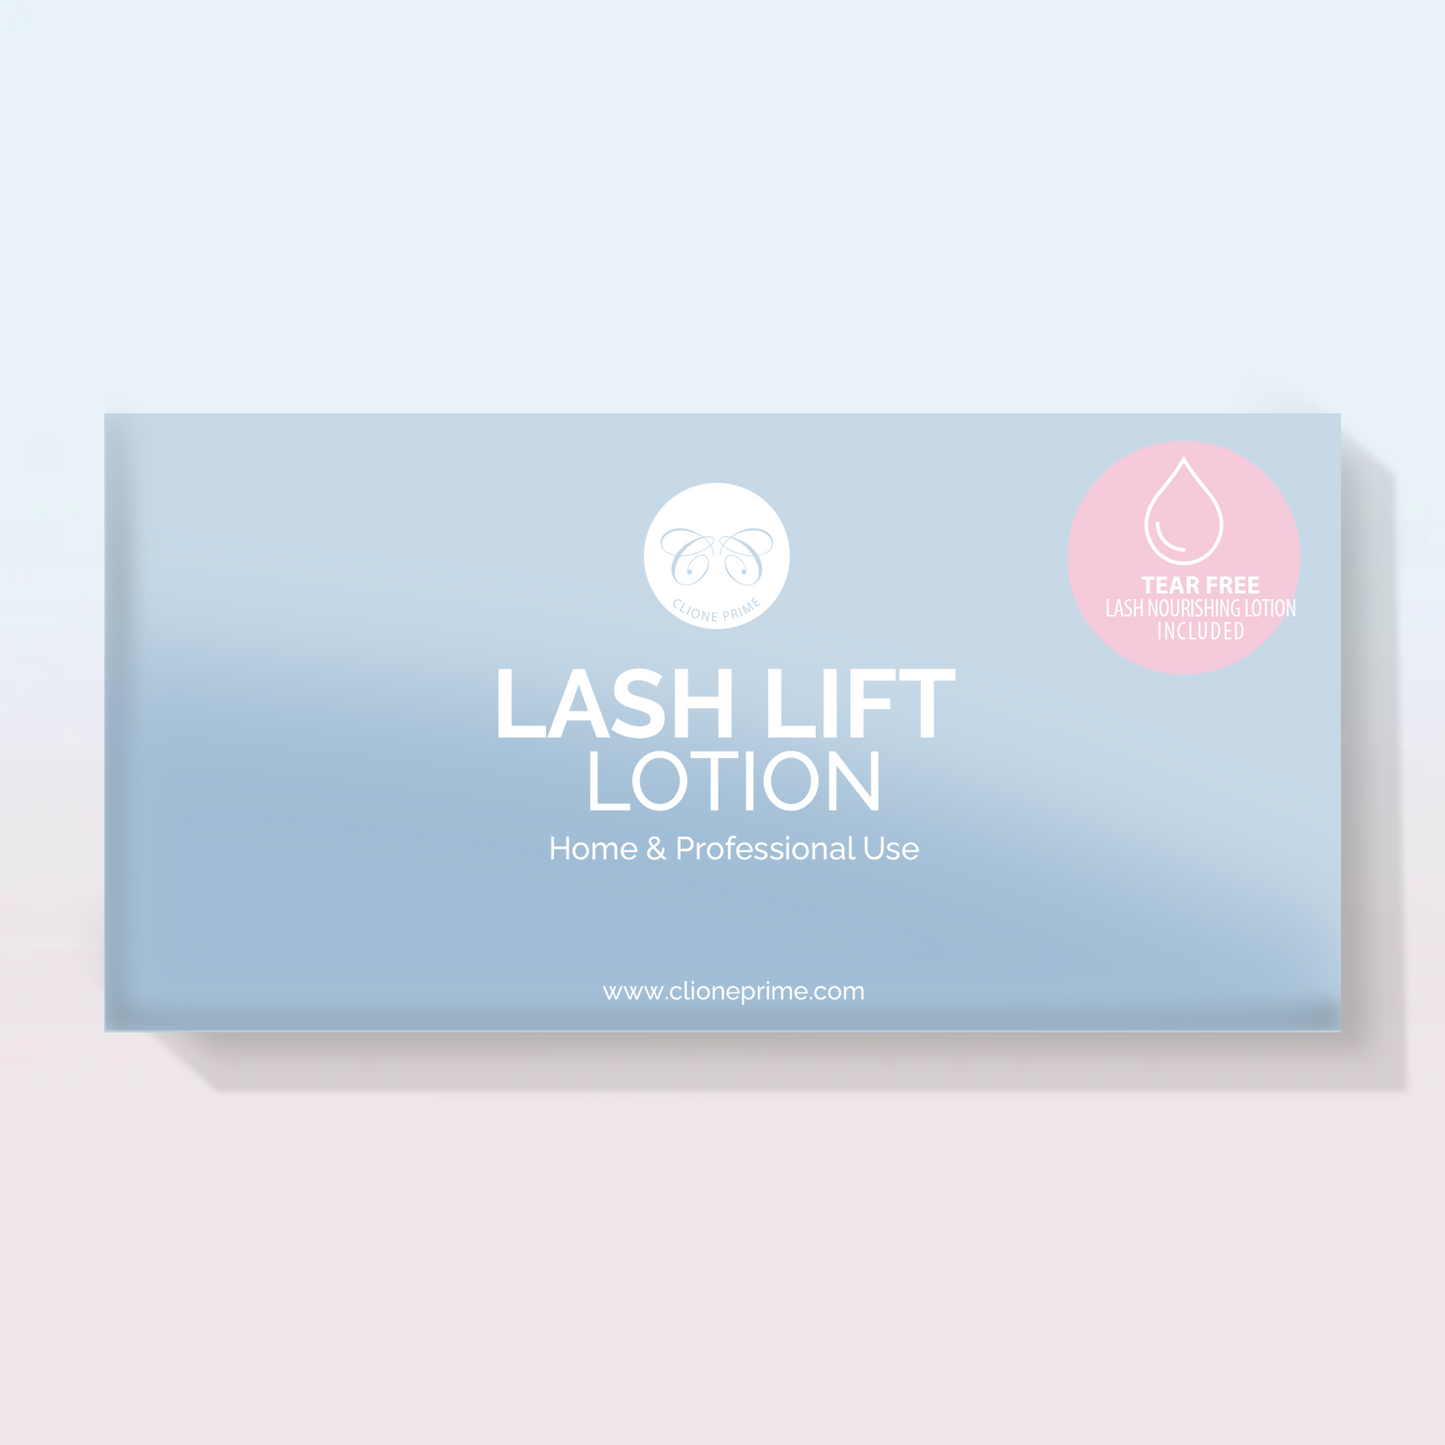 Lash Lift Solution